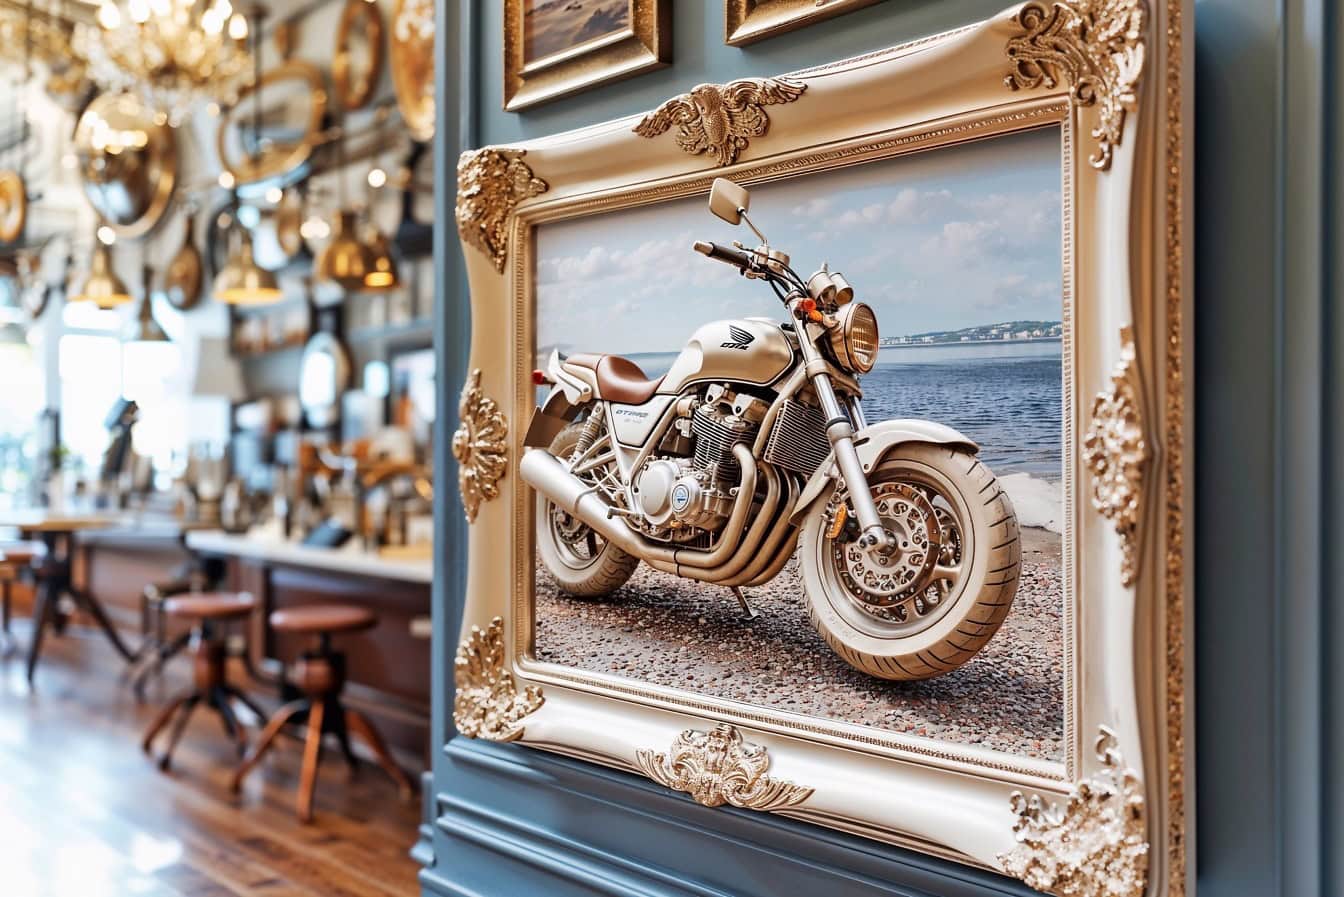 Hình ảnh 3D của một chiếc xe máy trong khung ảnh Victoria treo trên tường bên trong quán cà phê-nhà hàng sang trọng